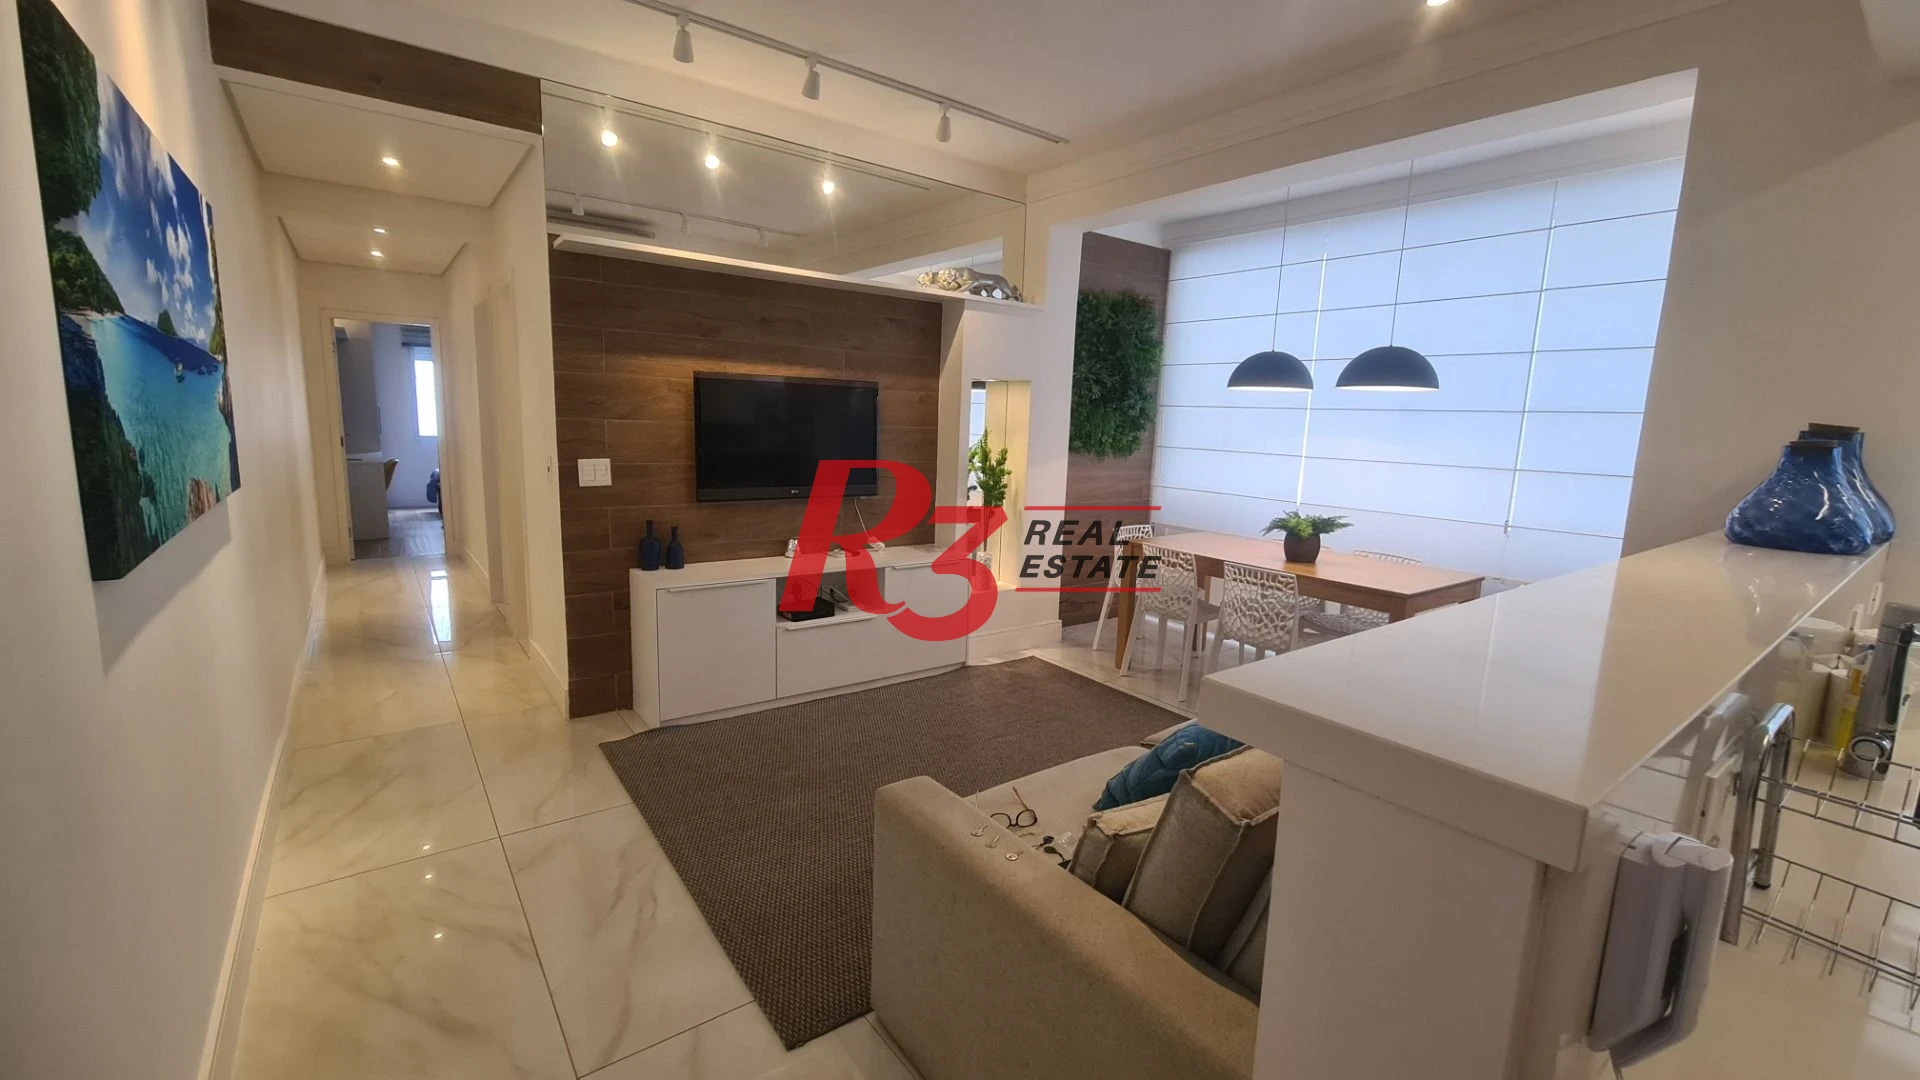 Apartamento com 2 dormitórios à venda, 96 m² por R$ 530.000,00 - José Menino - Santos/SP